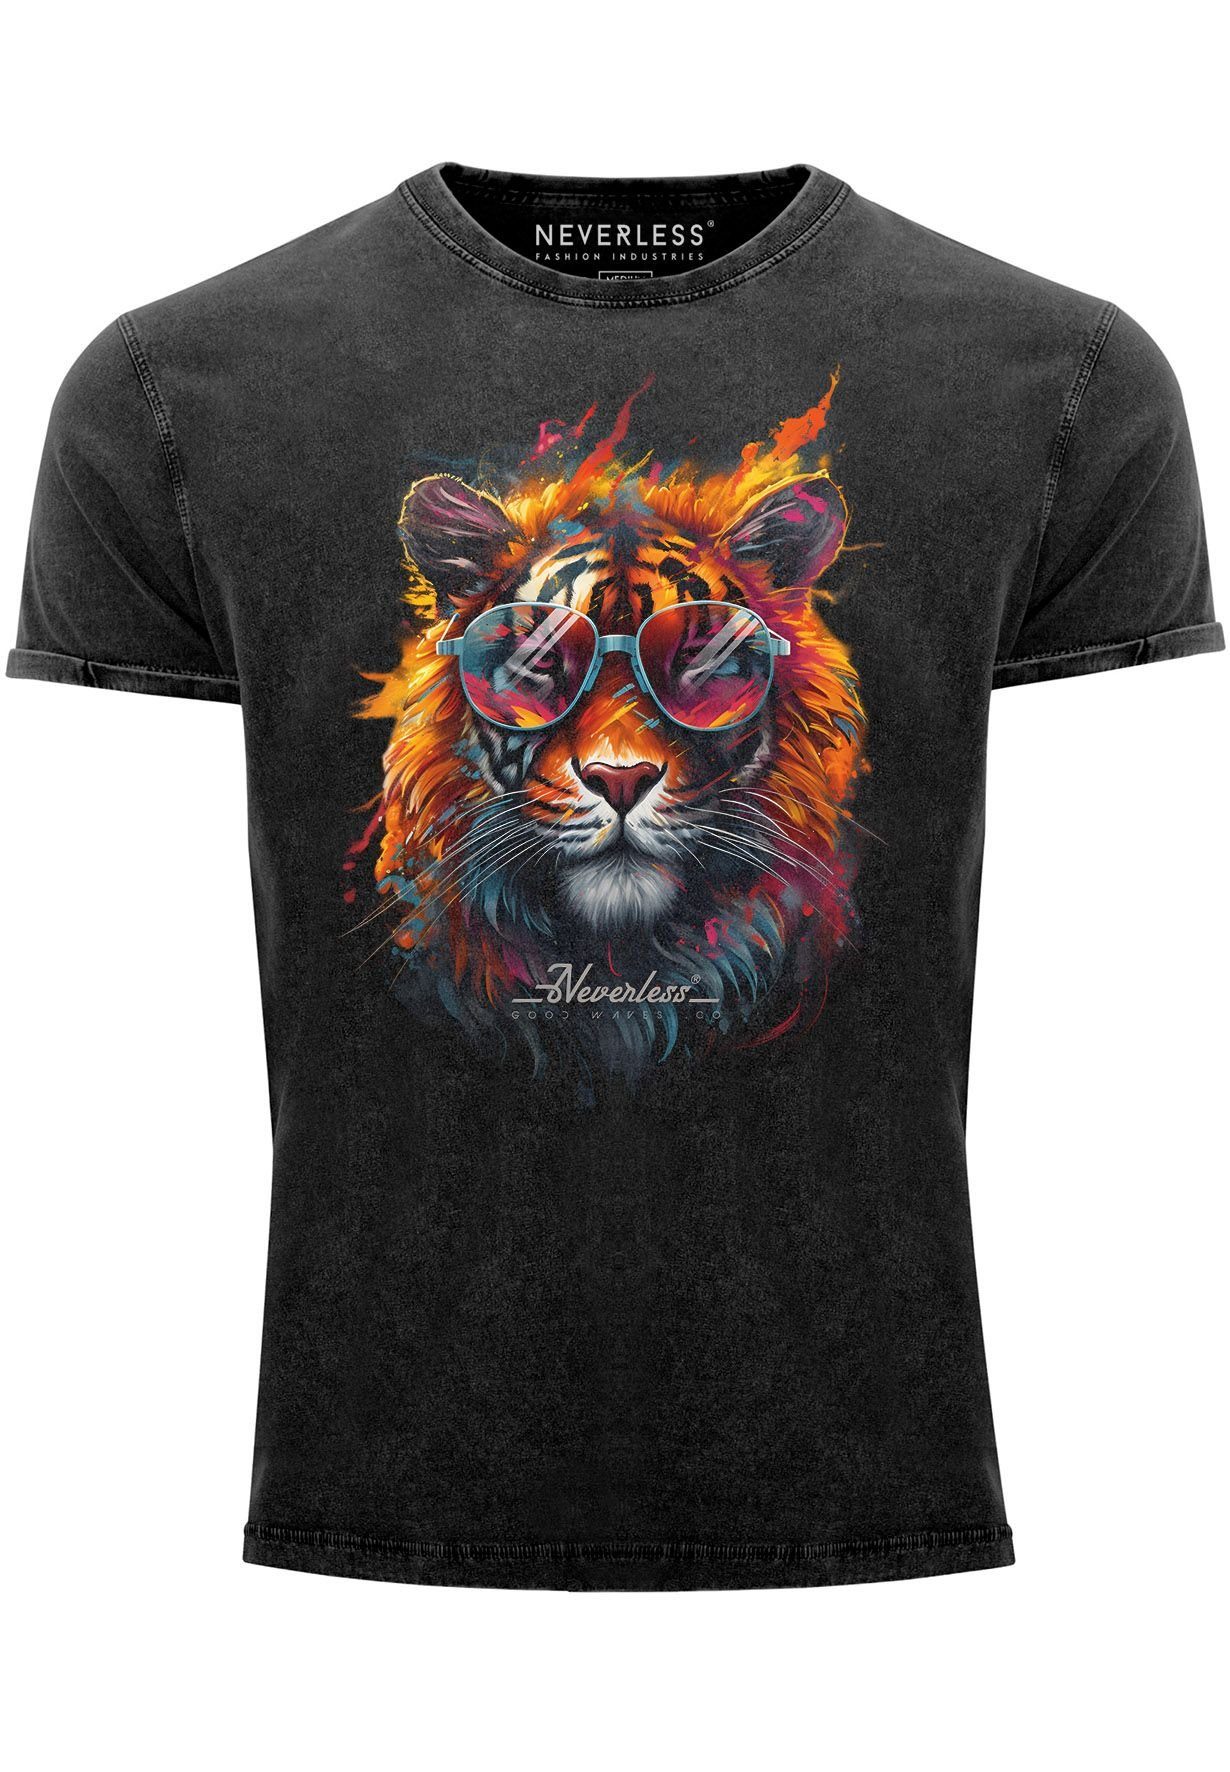 Neverless Print-Shirt Herren Vintage Shirt Tiger Print Aufdruck Flammen Sommer Sonnenbrille mit Print